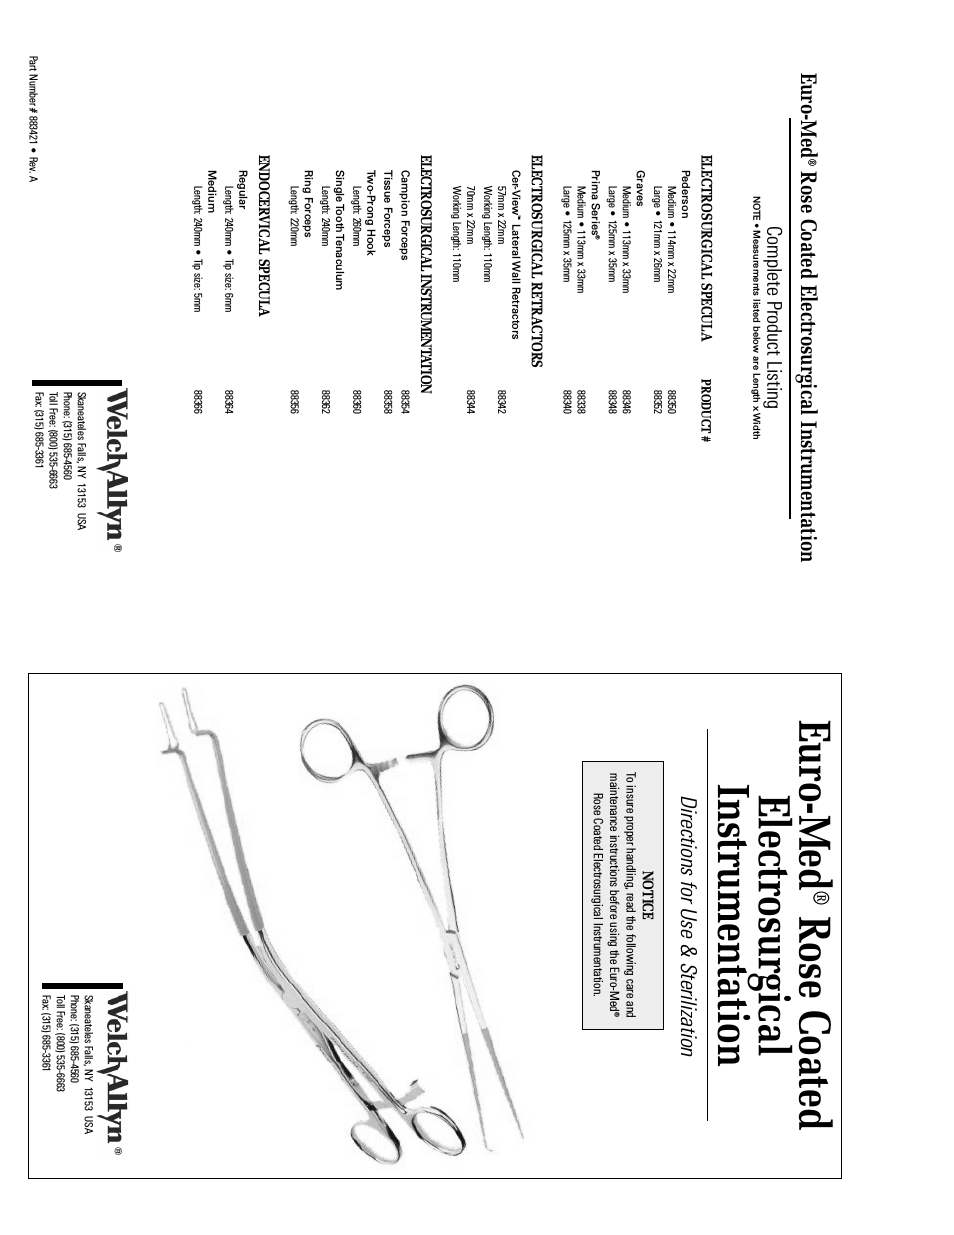 Euro-Med Rose Coated Electrosurgical Instrumentation - User Manual